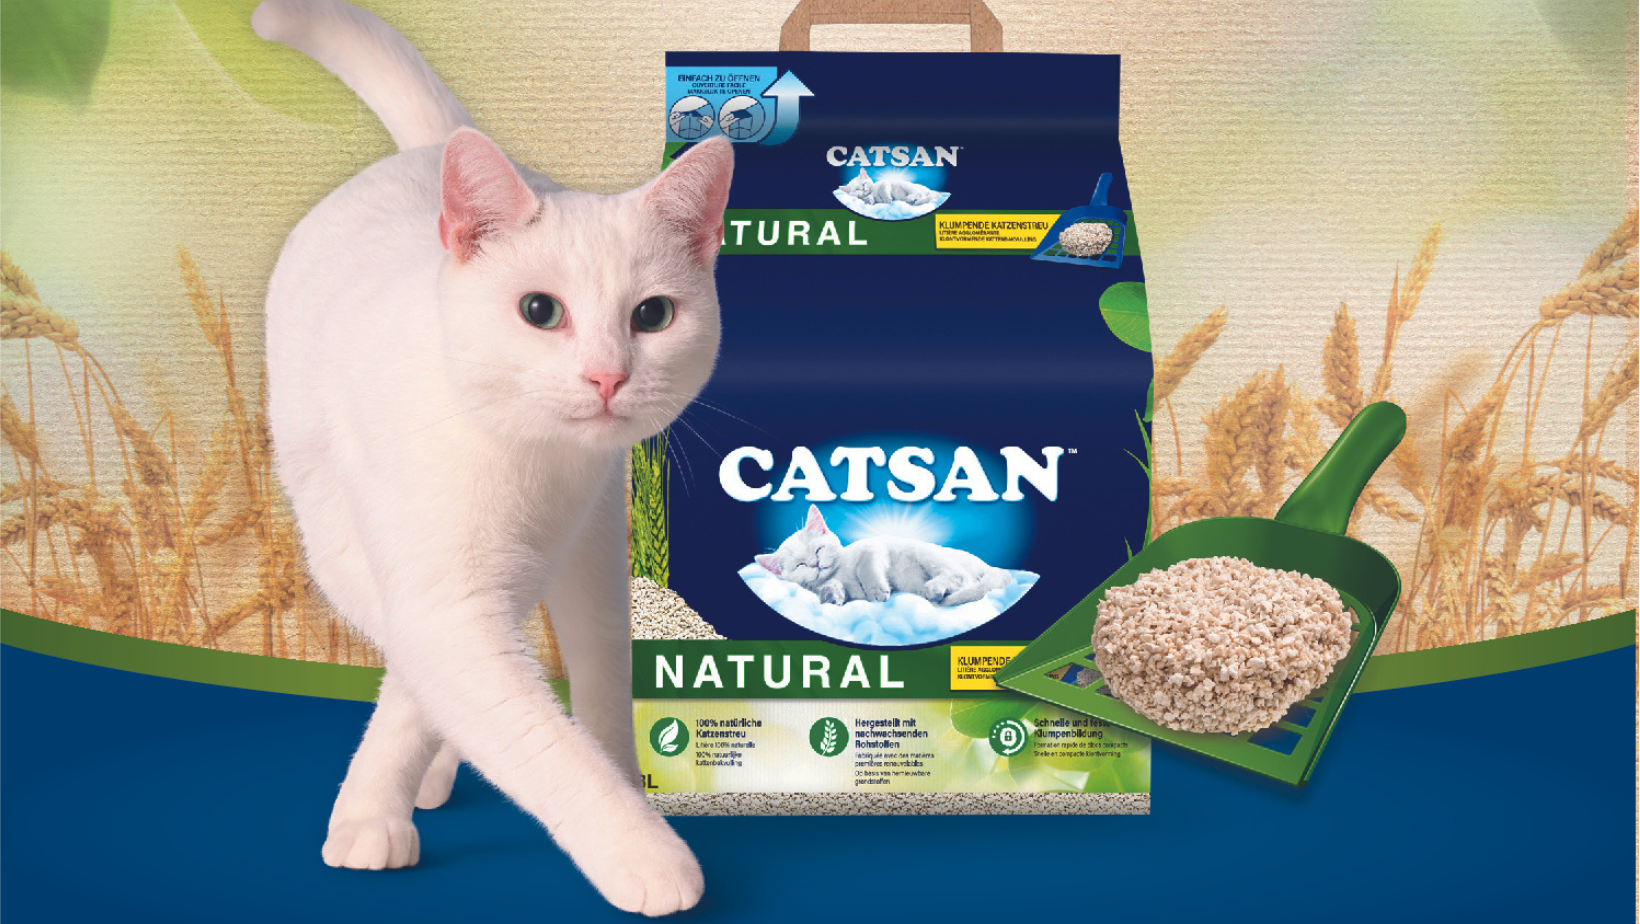 litière catsan avec chat blanc